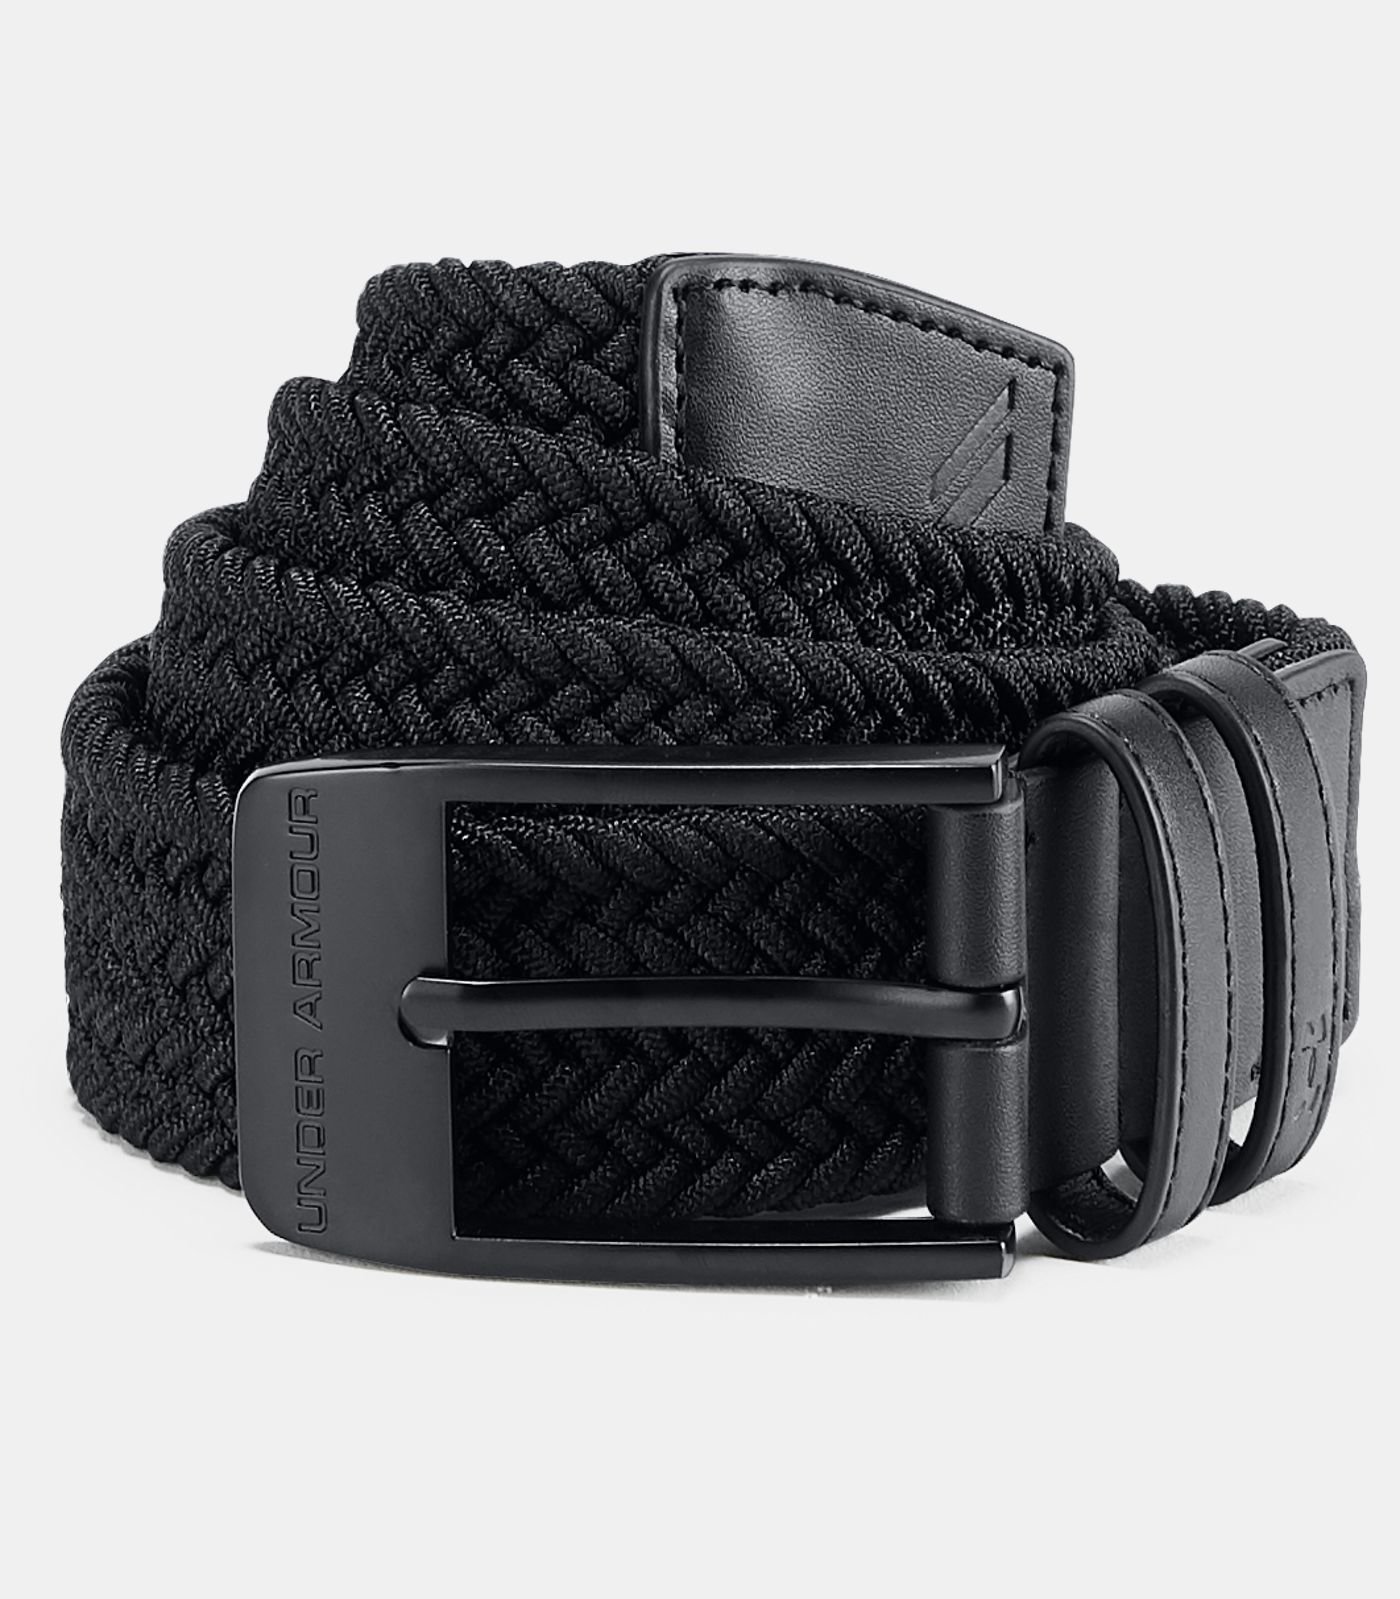 Cinture Under Armour Men's Braided 2.0 Belt Black 40